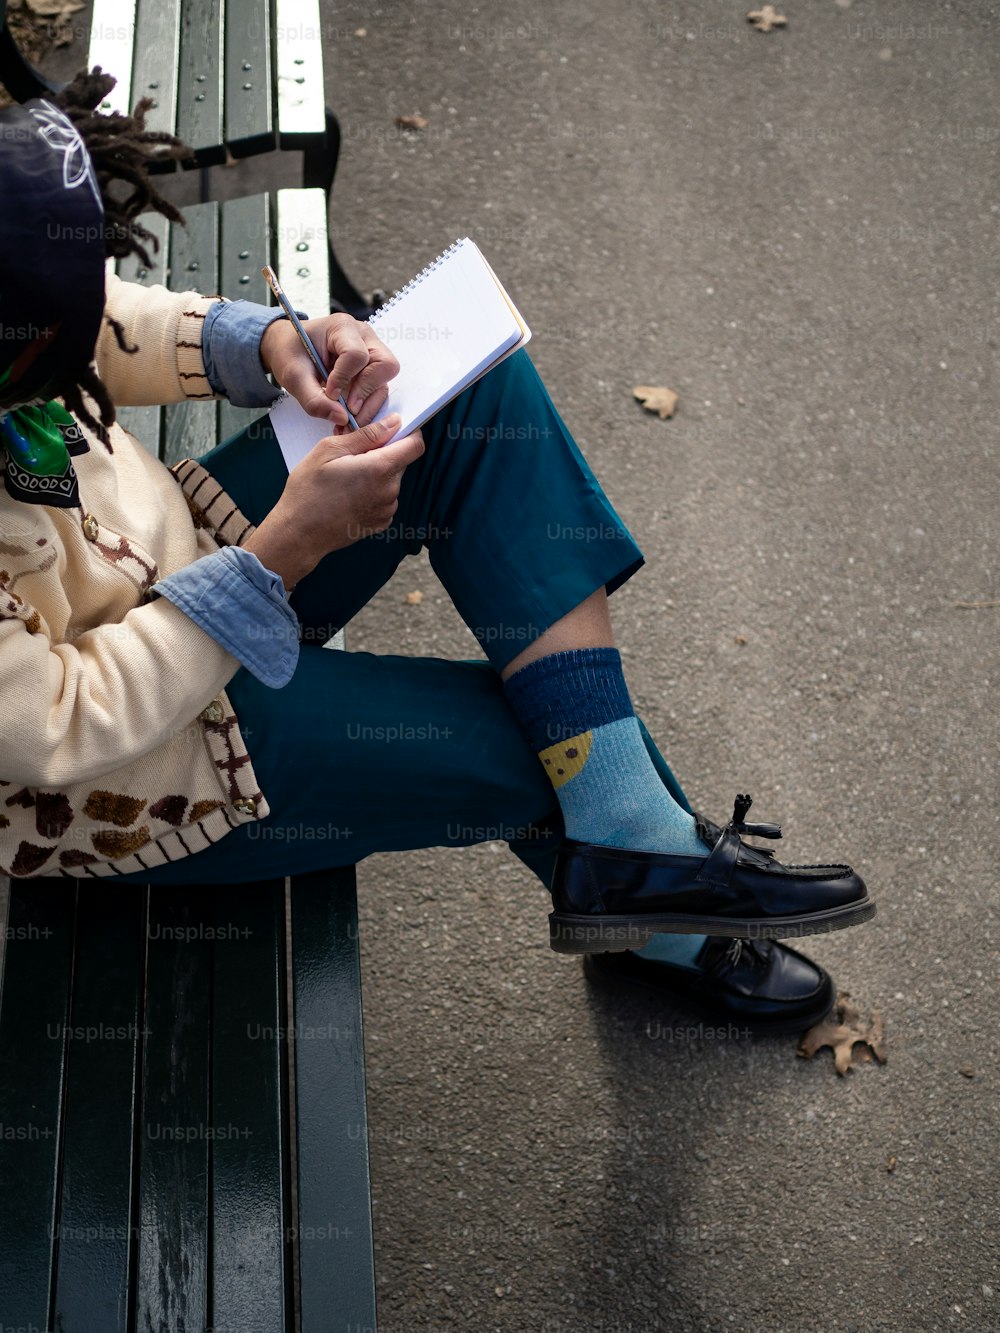 Una persona sentada en un banco escribiendo en un pedazo de papel